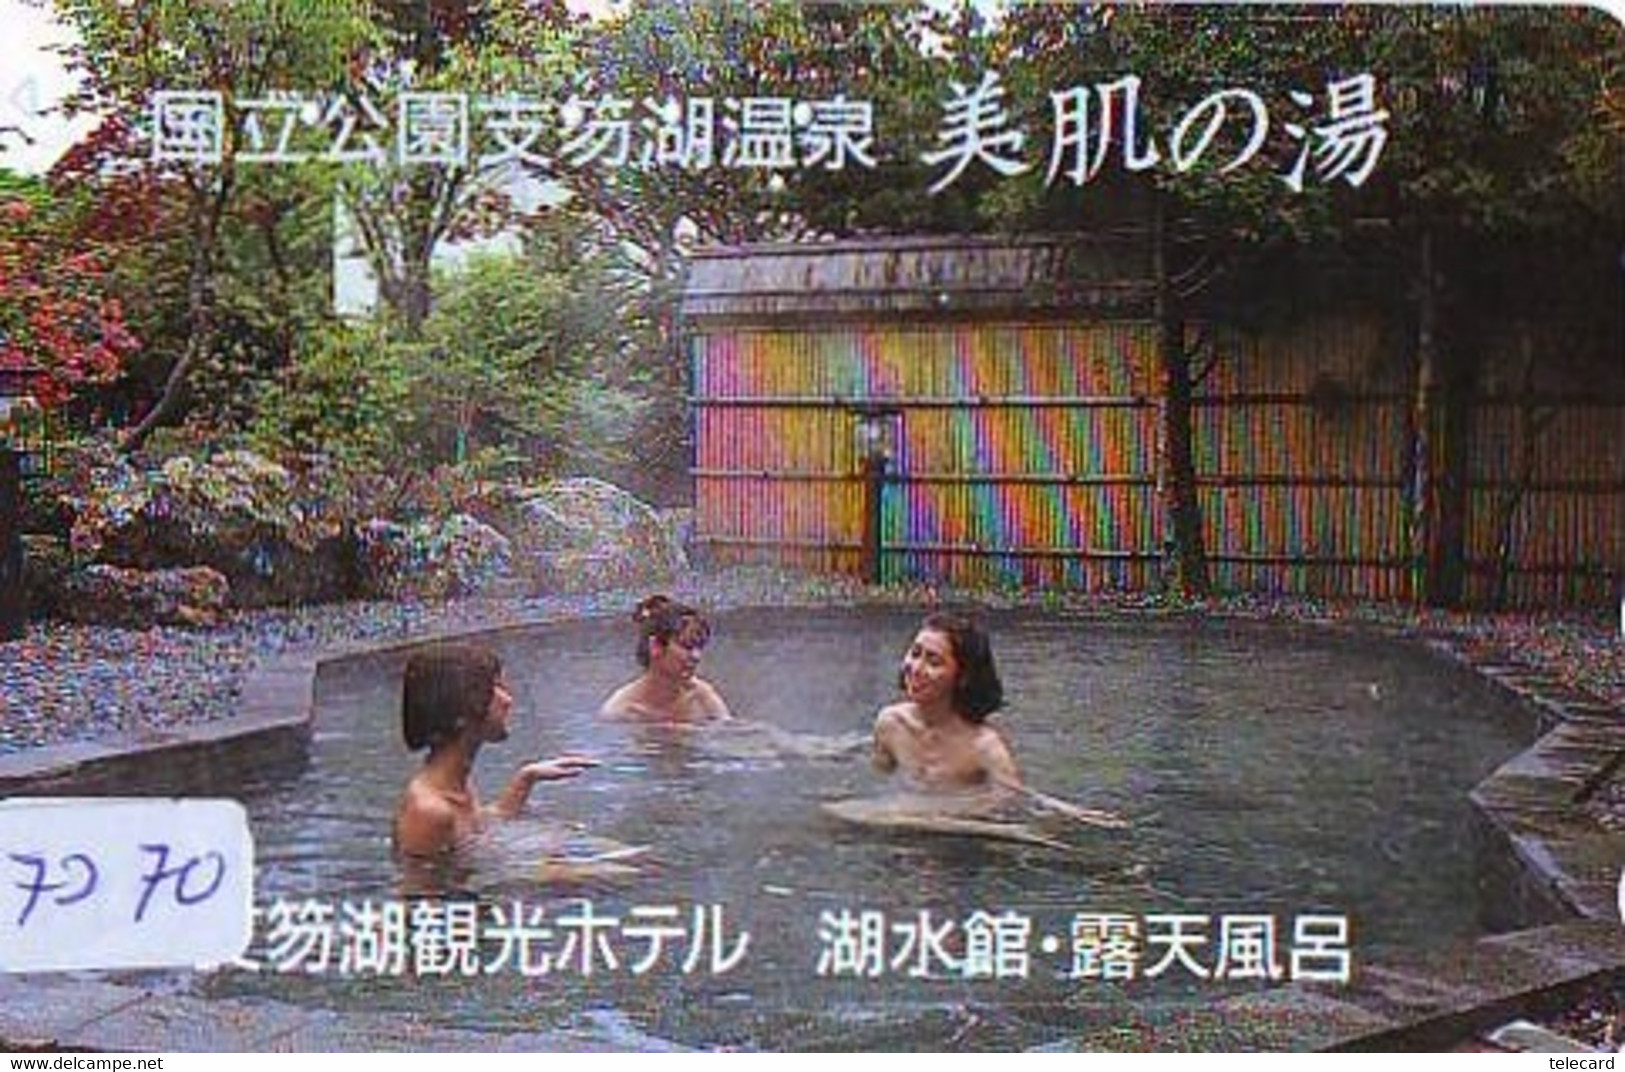 Télécarte Japon * FEMME EROTIQUE (7270) BATH * PHONECARD JAPAN * TELEFONKARTE *  BATHCLOTHES LINGERIE - Fashion